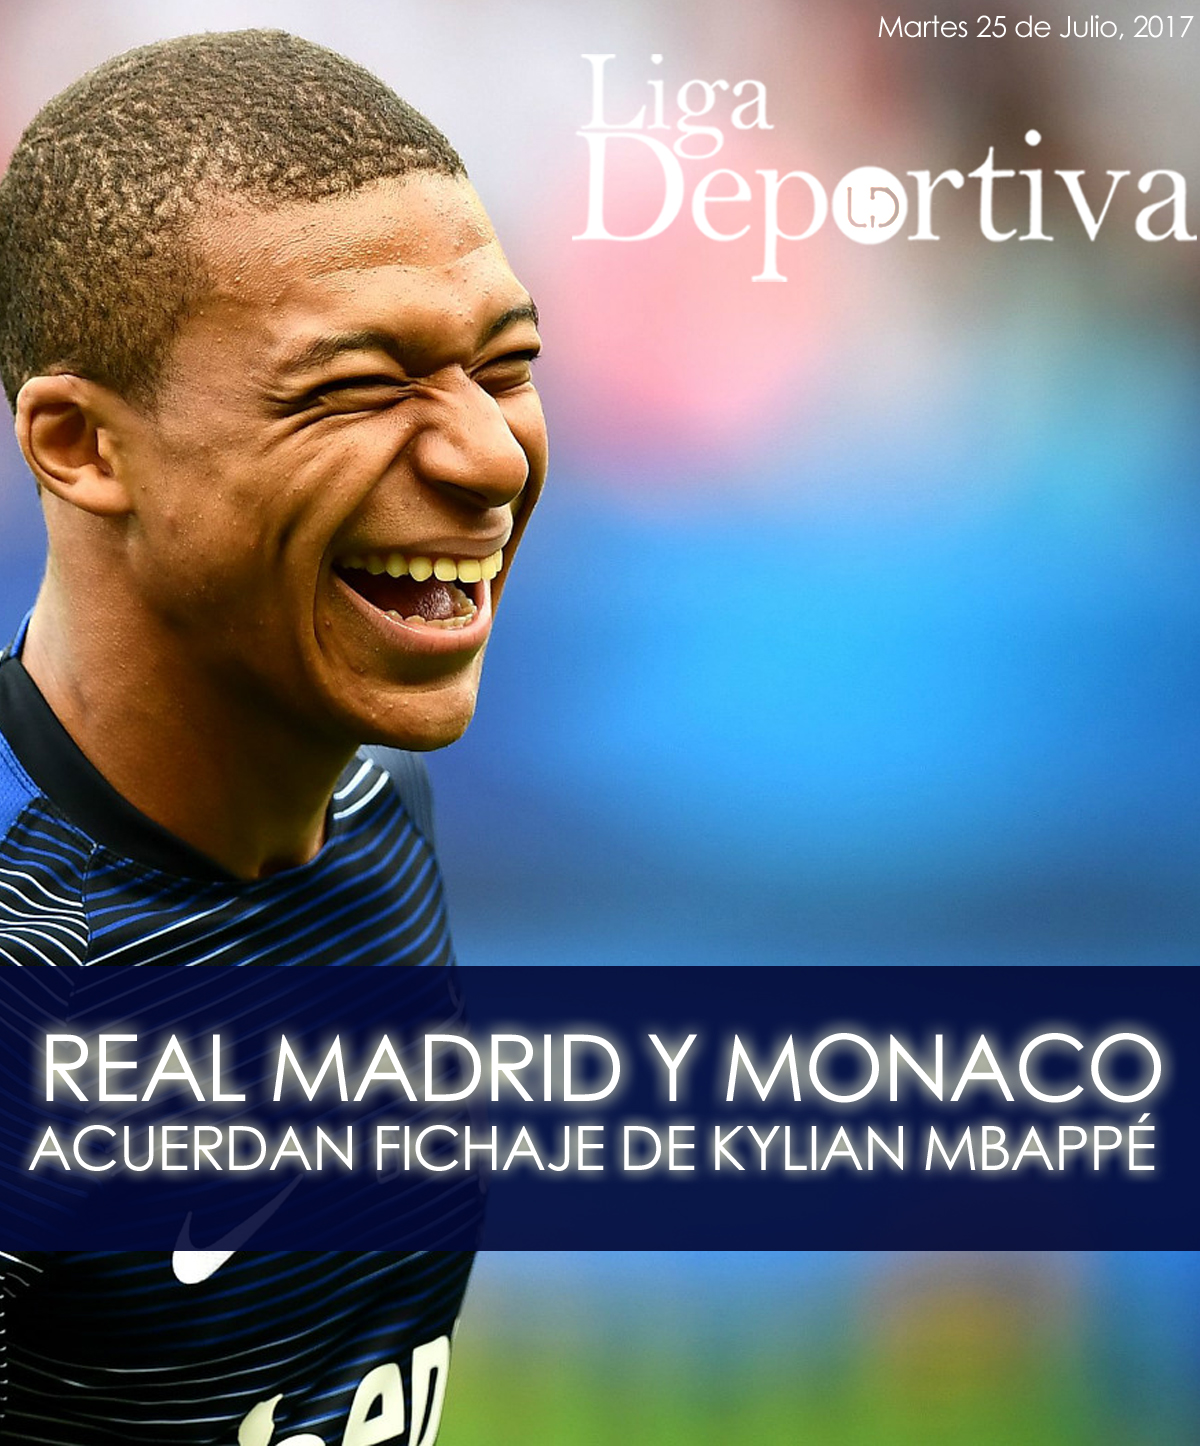 Real Madrid y Monaco acuerdan fichaje de Kylian Mbappé